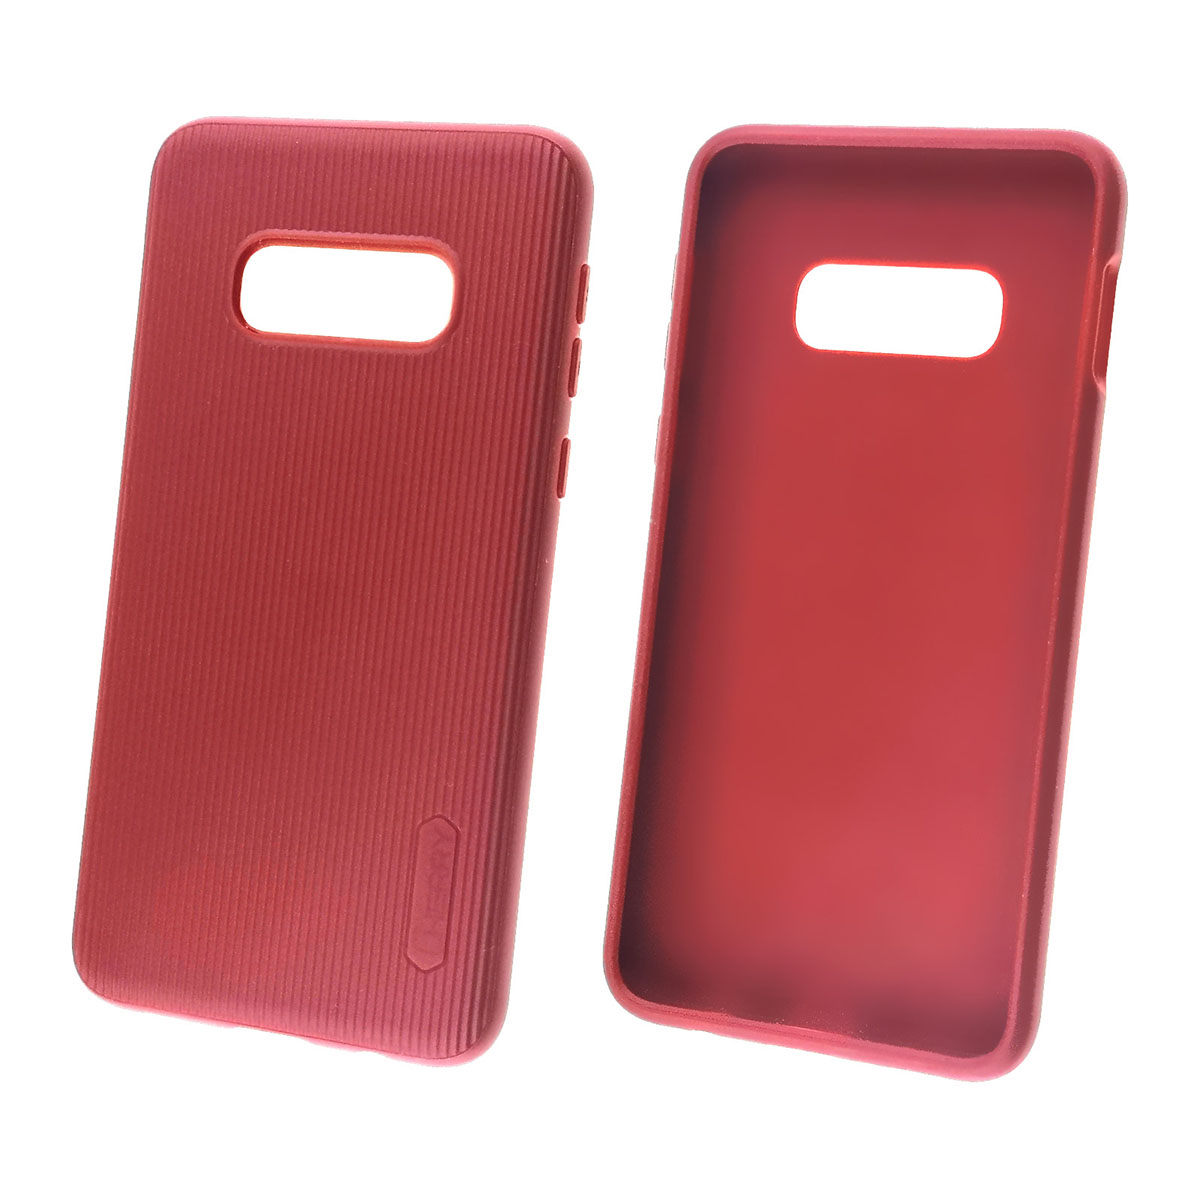 Чехол накладка Cherry для SAMSUNG Galaxy S10e (SM-G970), силикон, цвет темно красный.